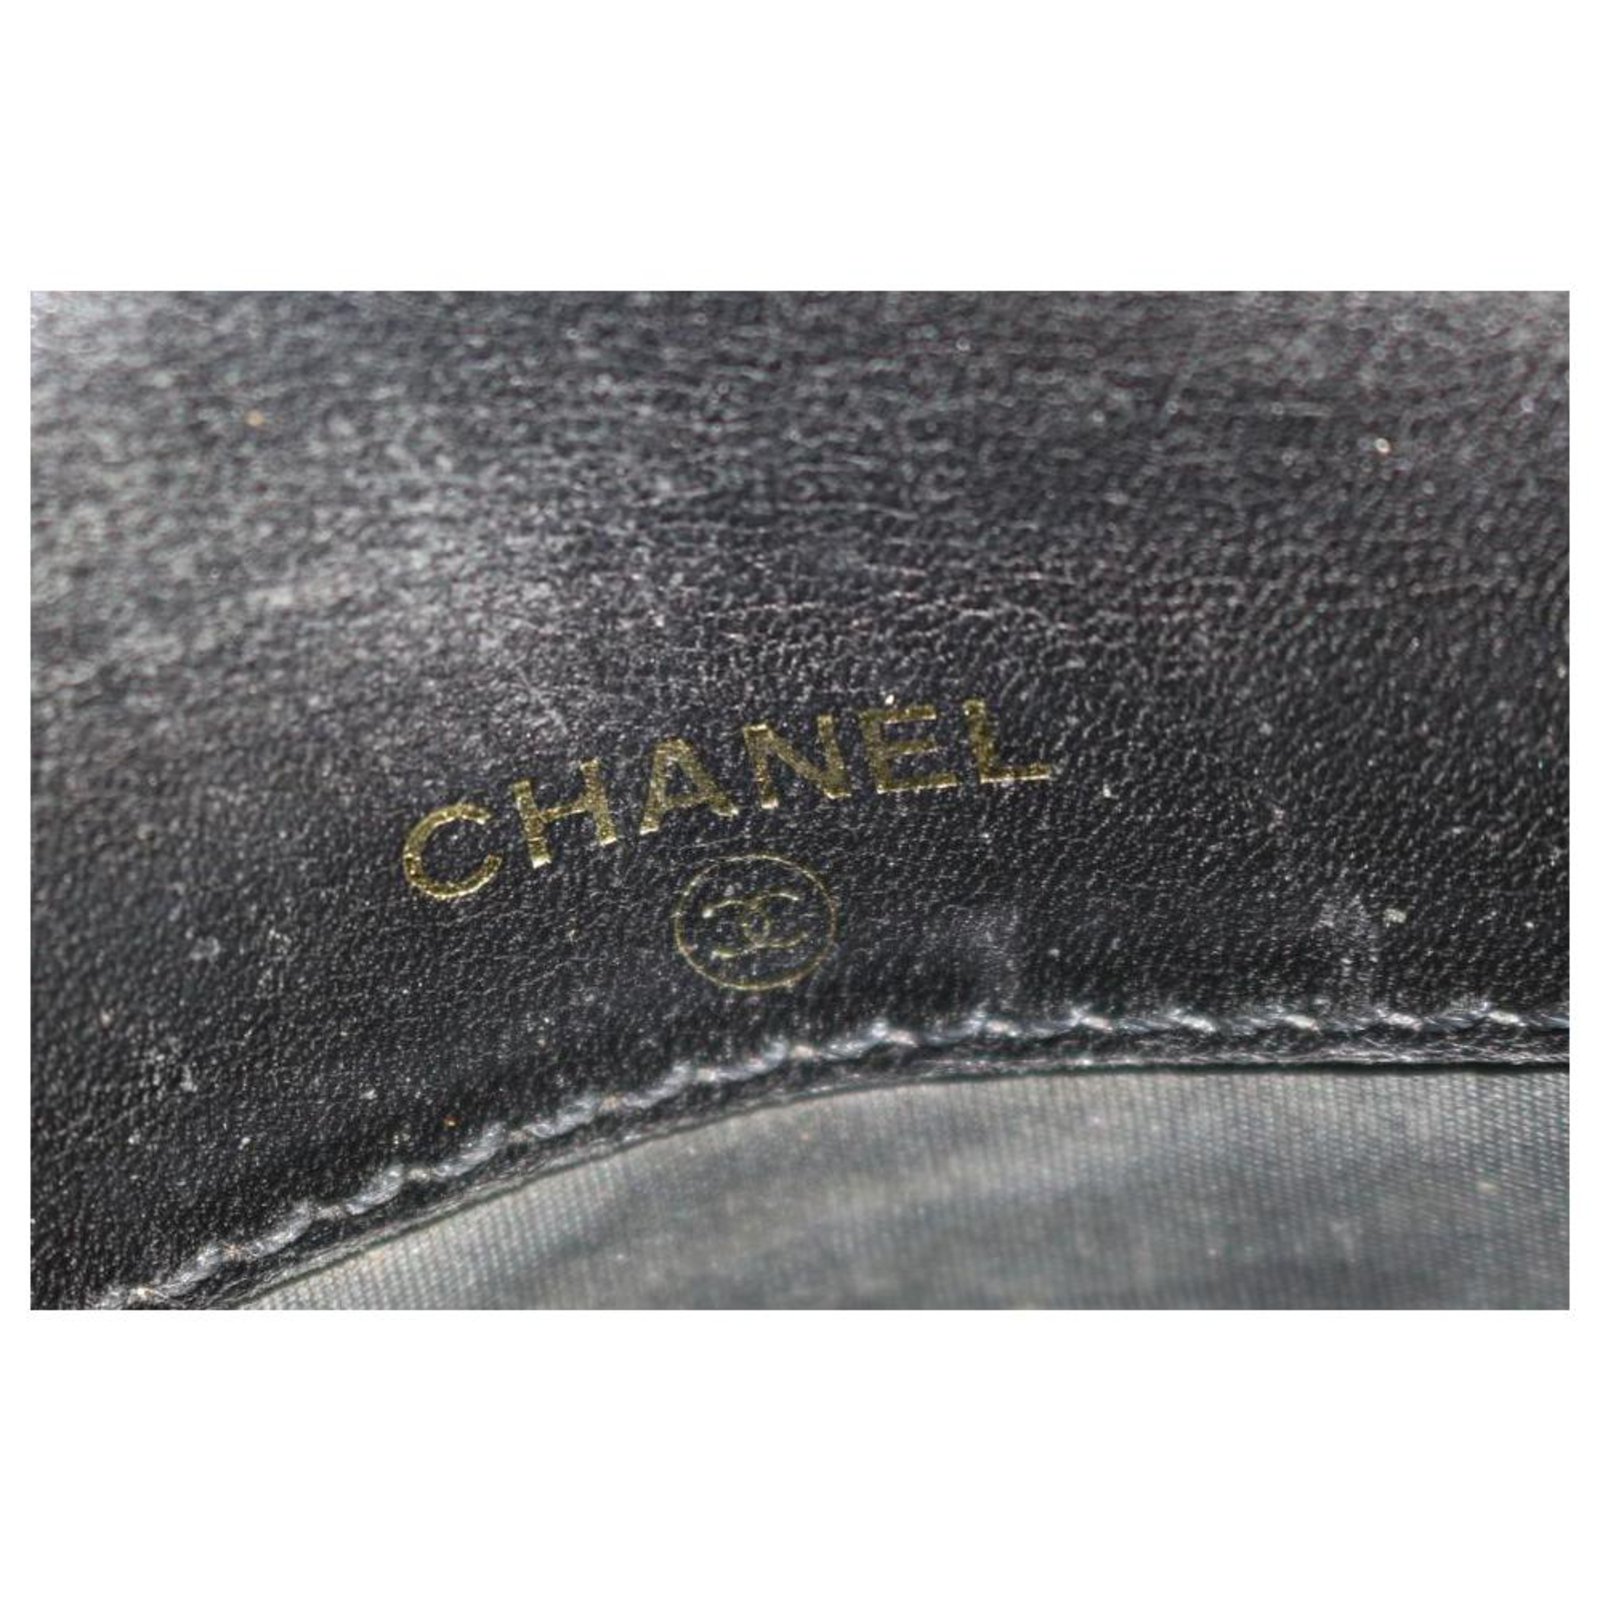 Chanel Black Caviar CC Cigarette Case 3CE1228 ref.290150 - Joli Closet